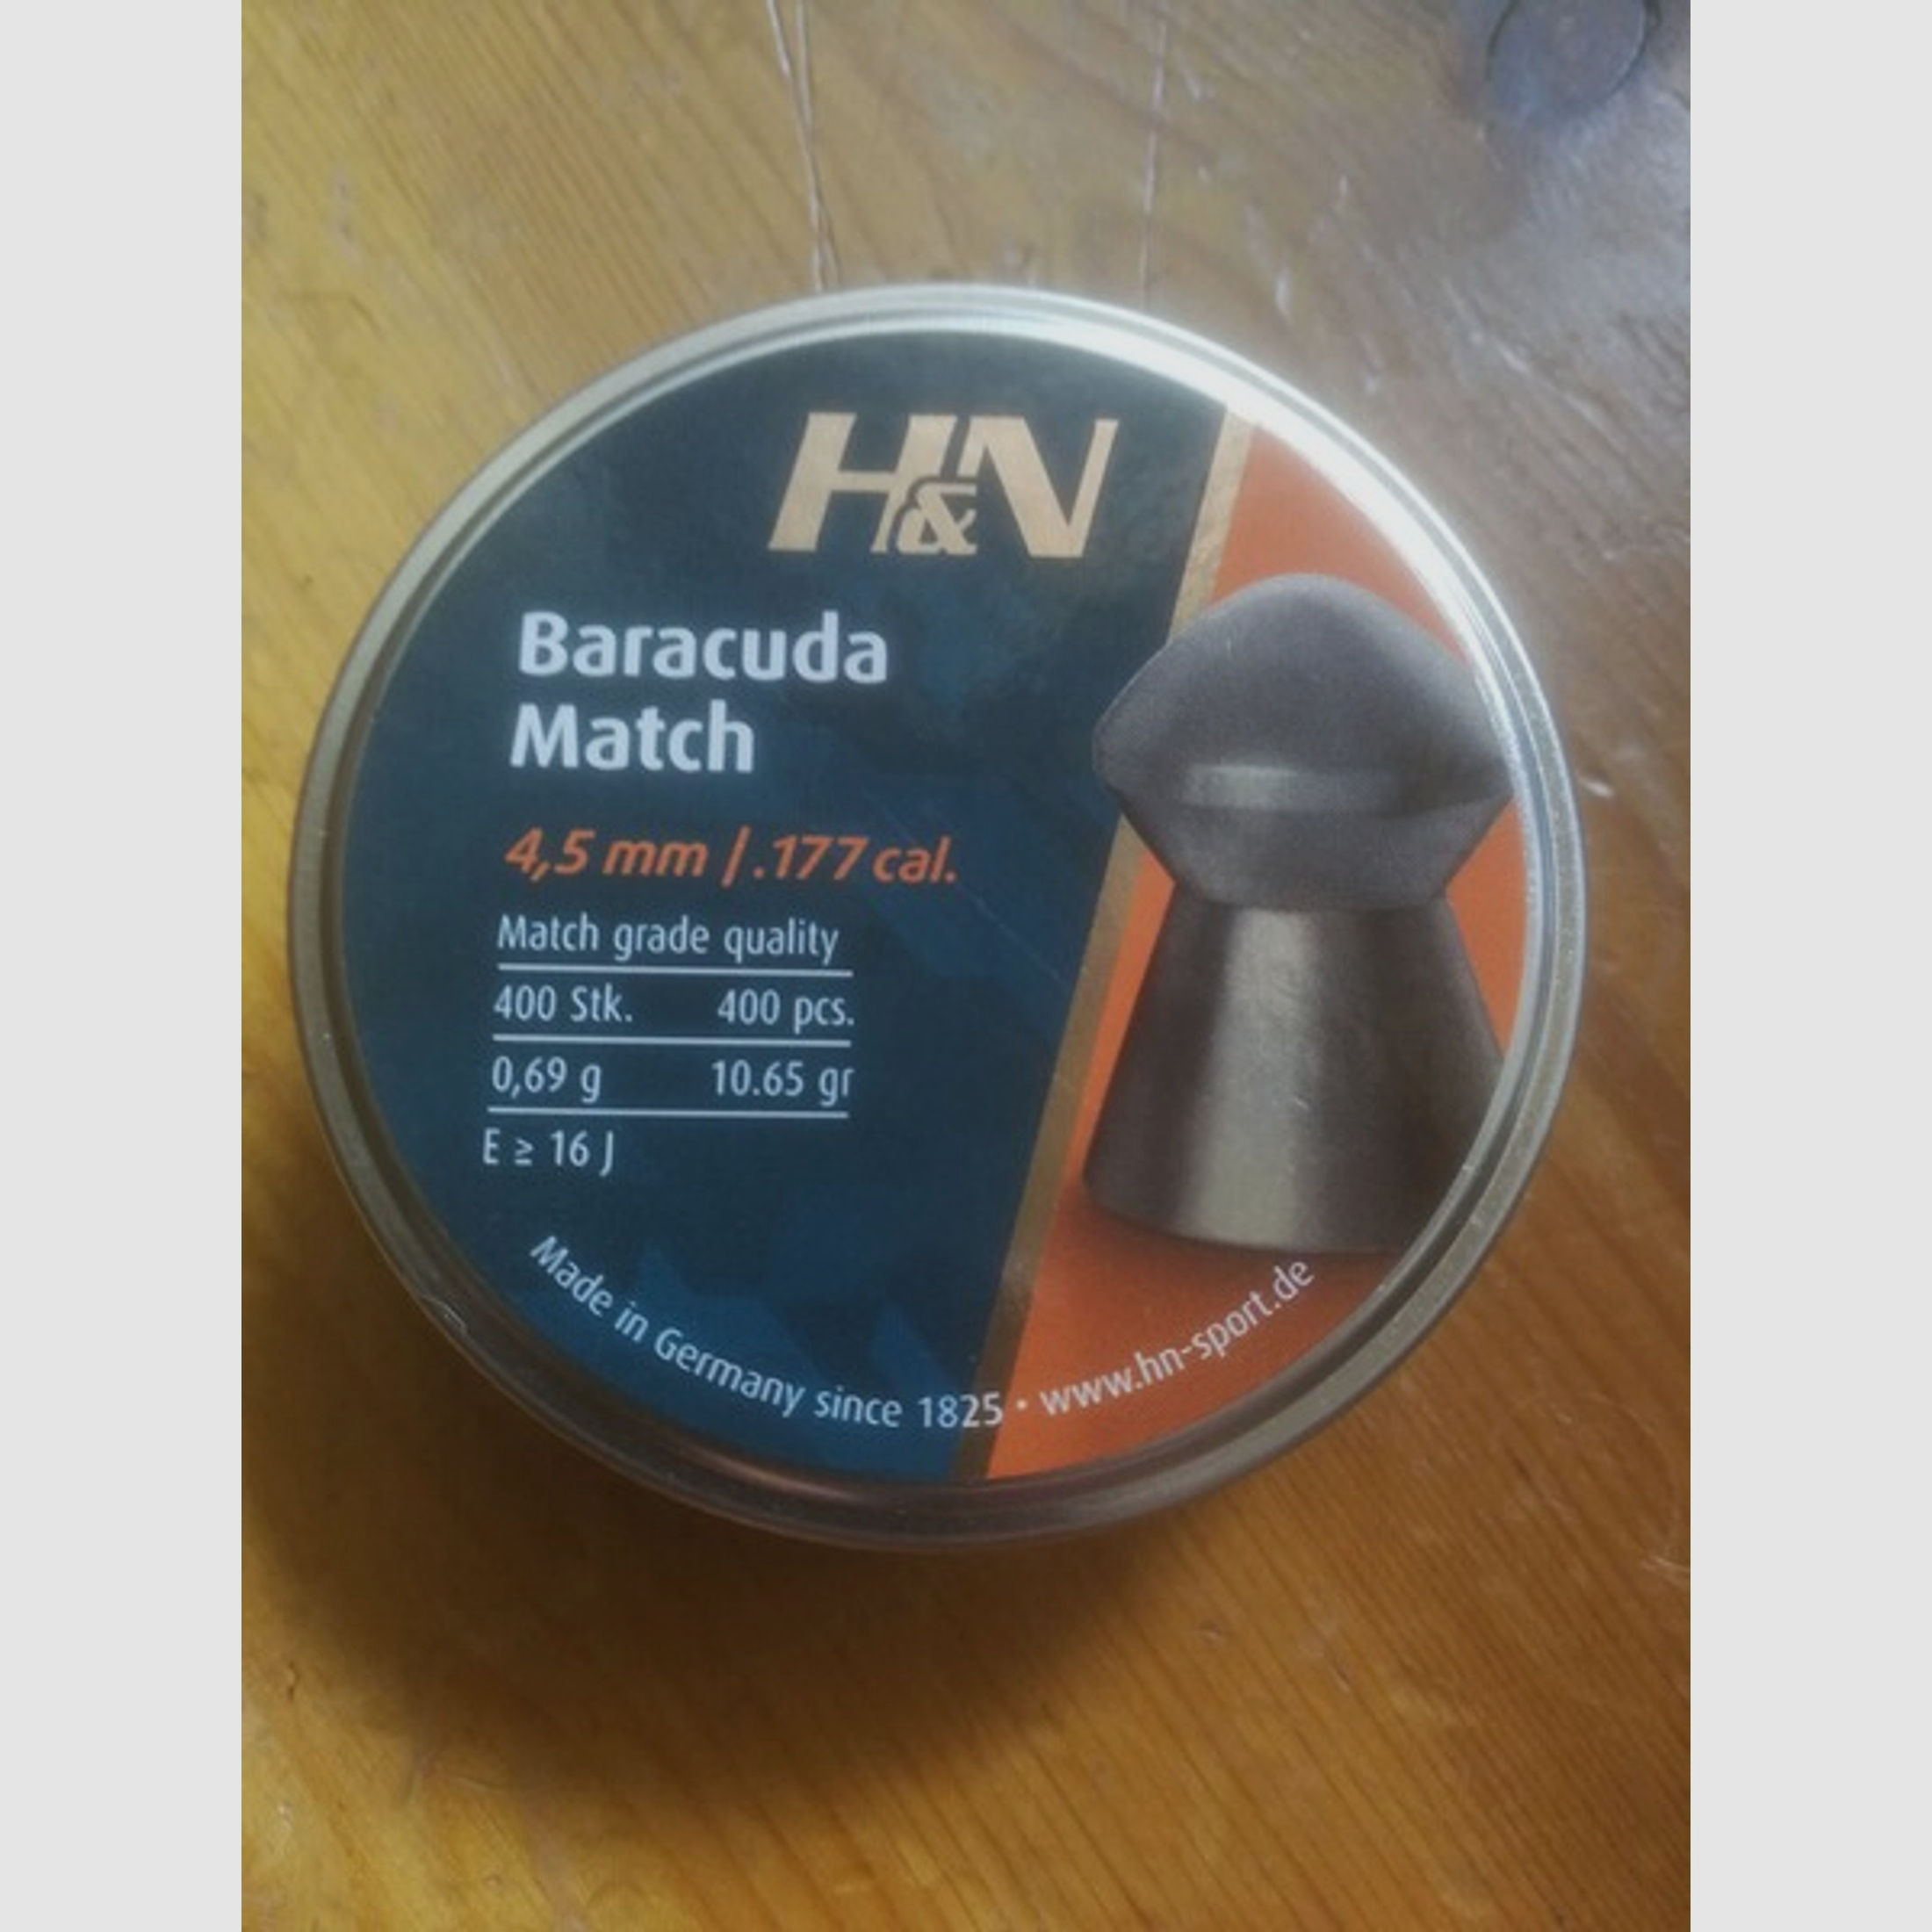 H&N Baracuda Match 4.52mm 10.65gr Diabolo